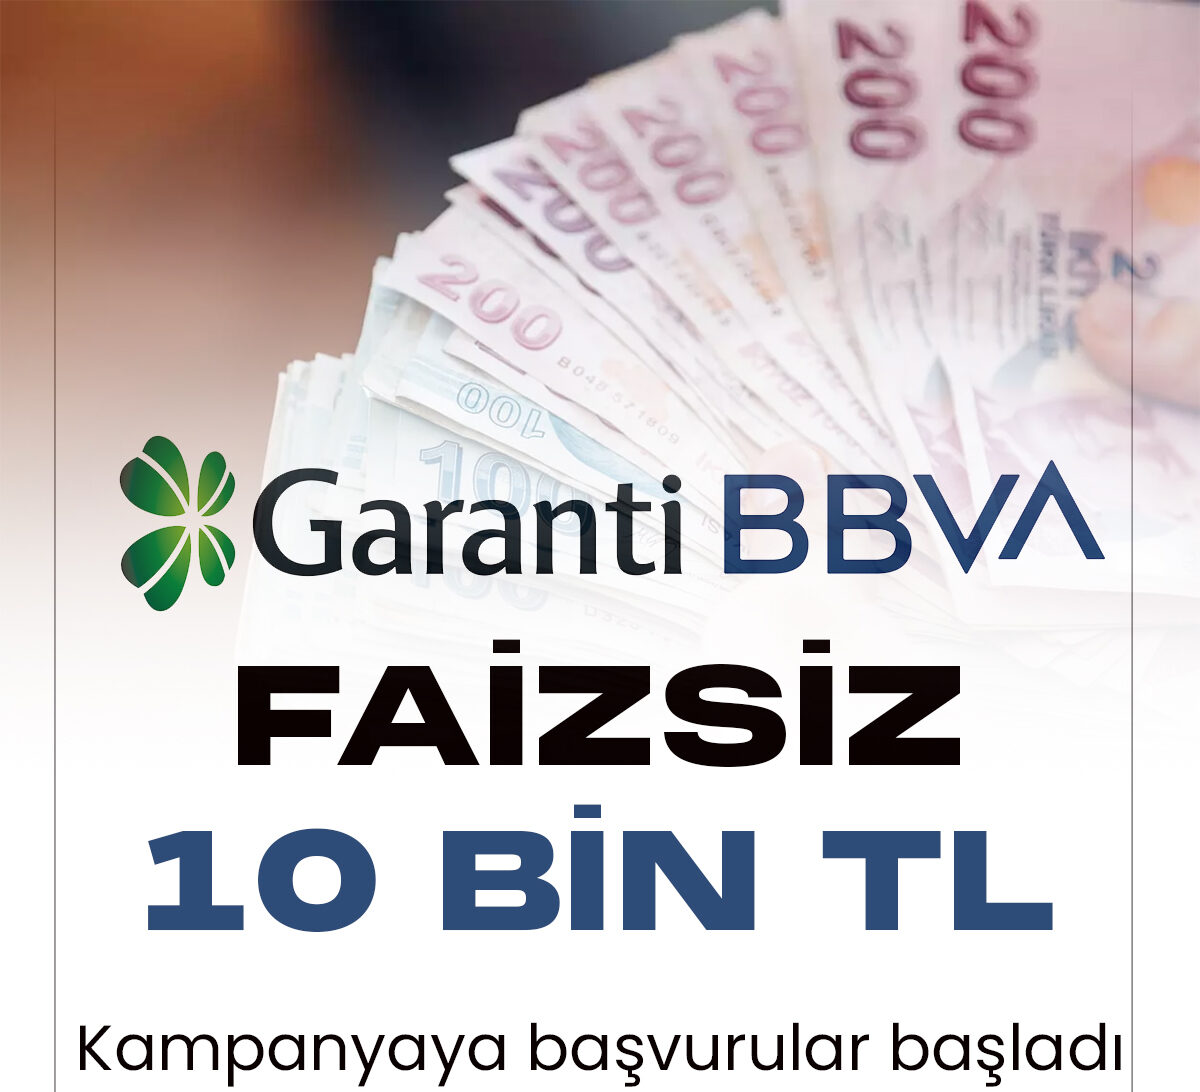 Garanti Bankası nakit ihtiyacı olanlara faizsiz 10 bin TL'ye kadar taksitli nakit avans kampanyası sunuyor.